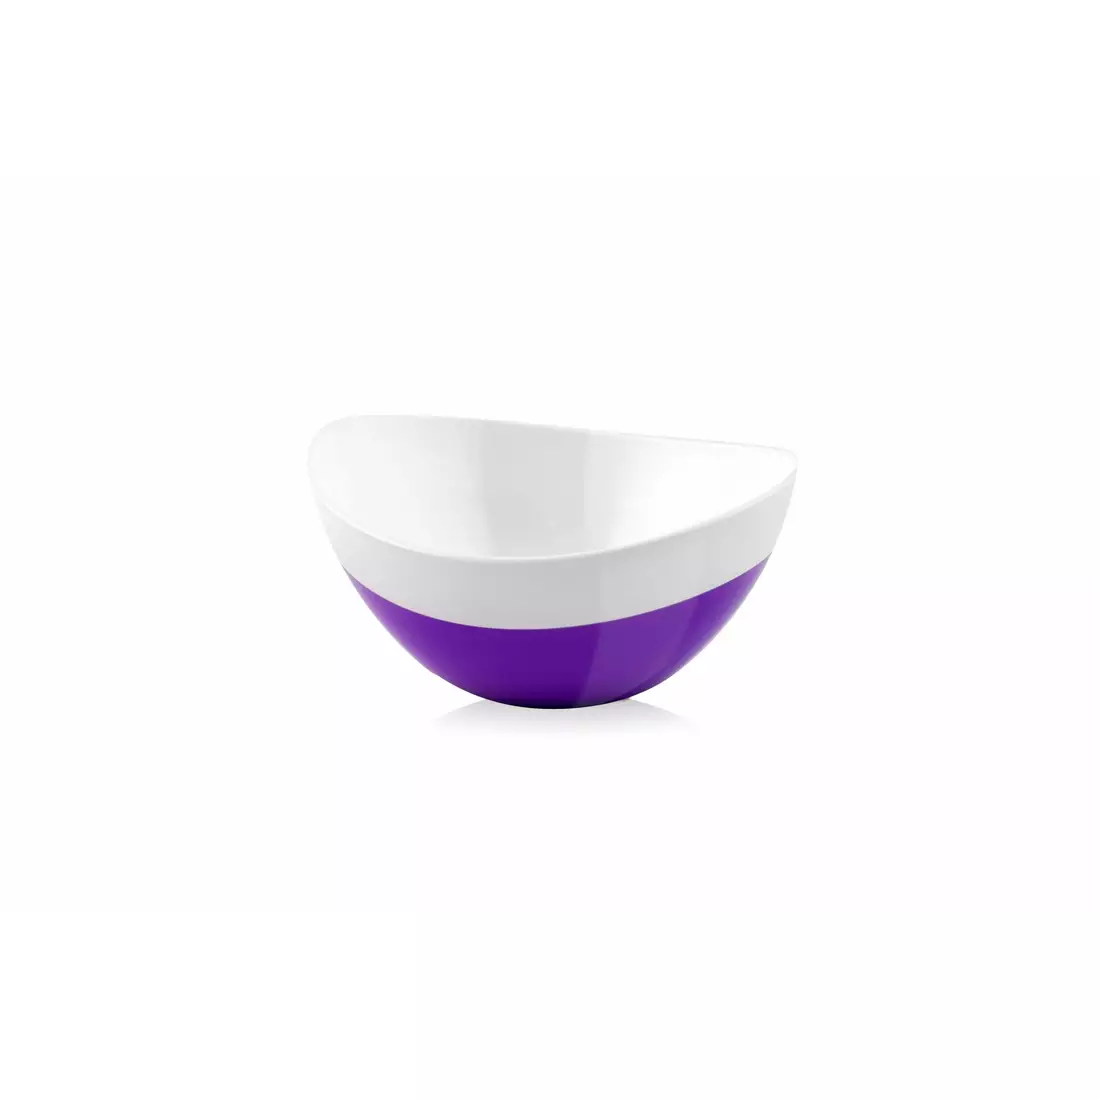 Vialli Design Livio Duo oval bowl, white and purple